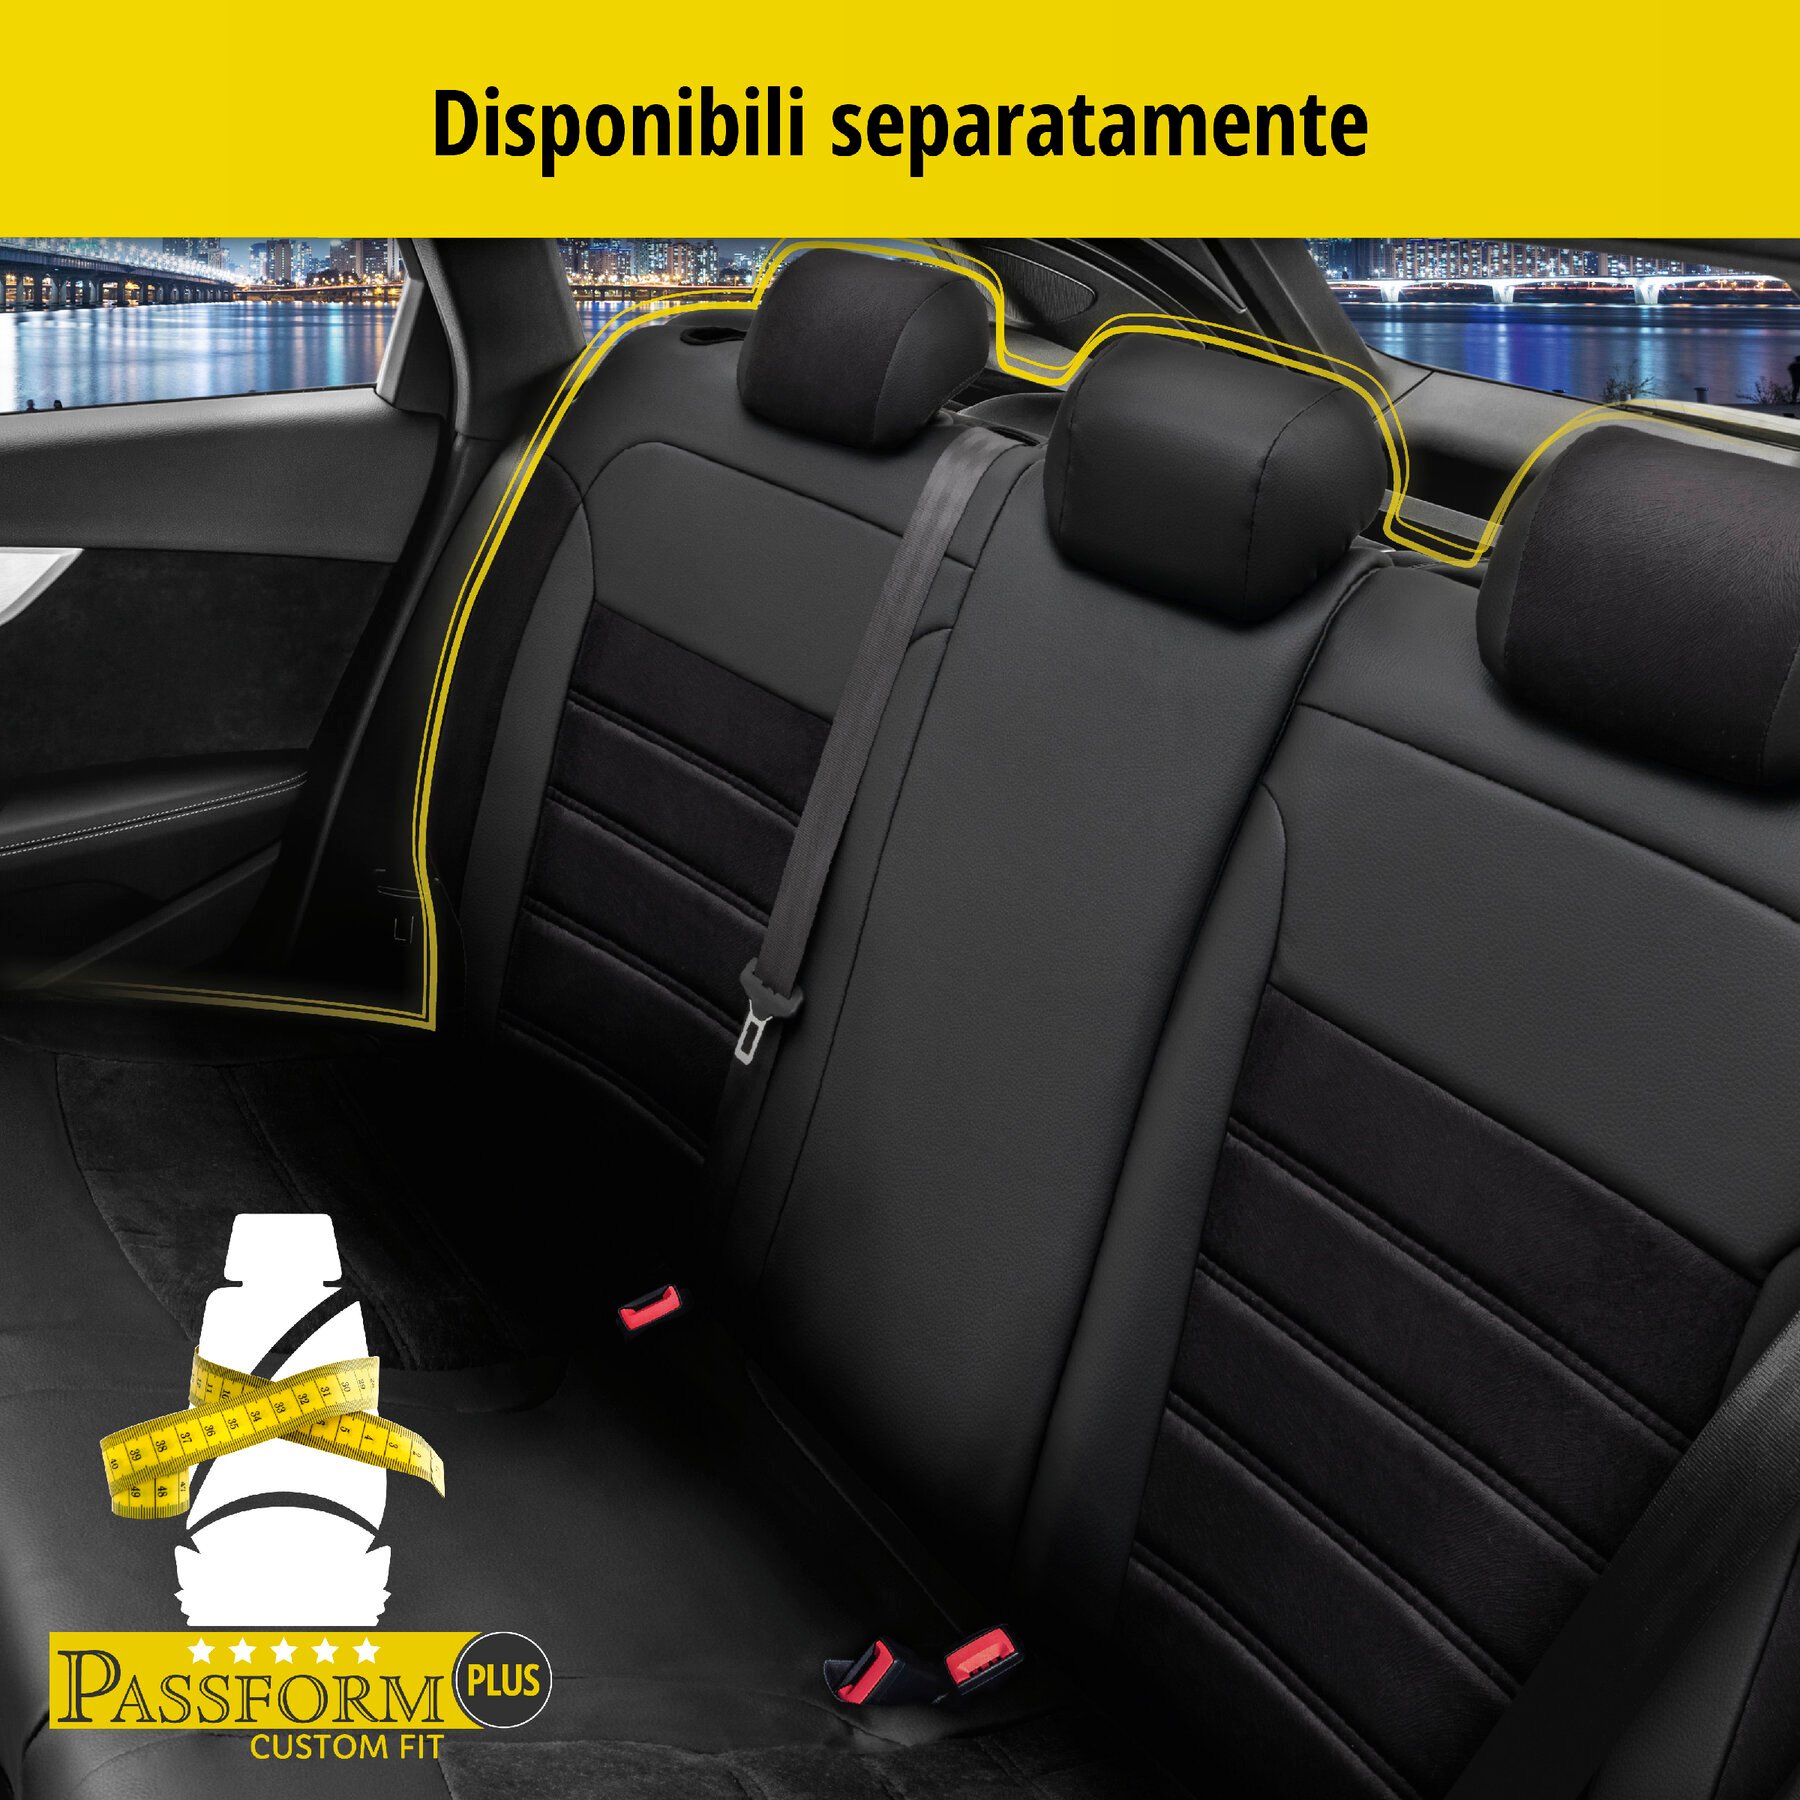 Coprisedili Bari per VW Golf 7 Comfortline modello 08/2012-03/2021, 2 coprisedili singoli per sedili sportivi